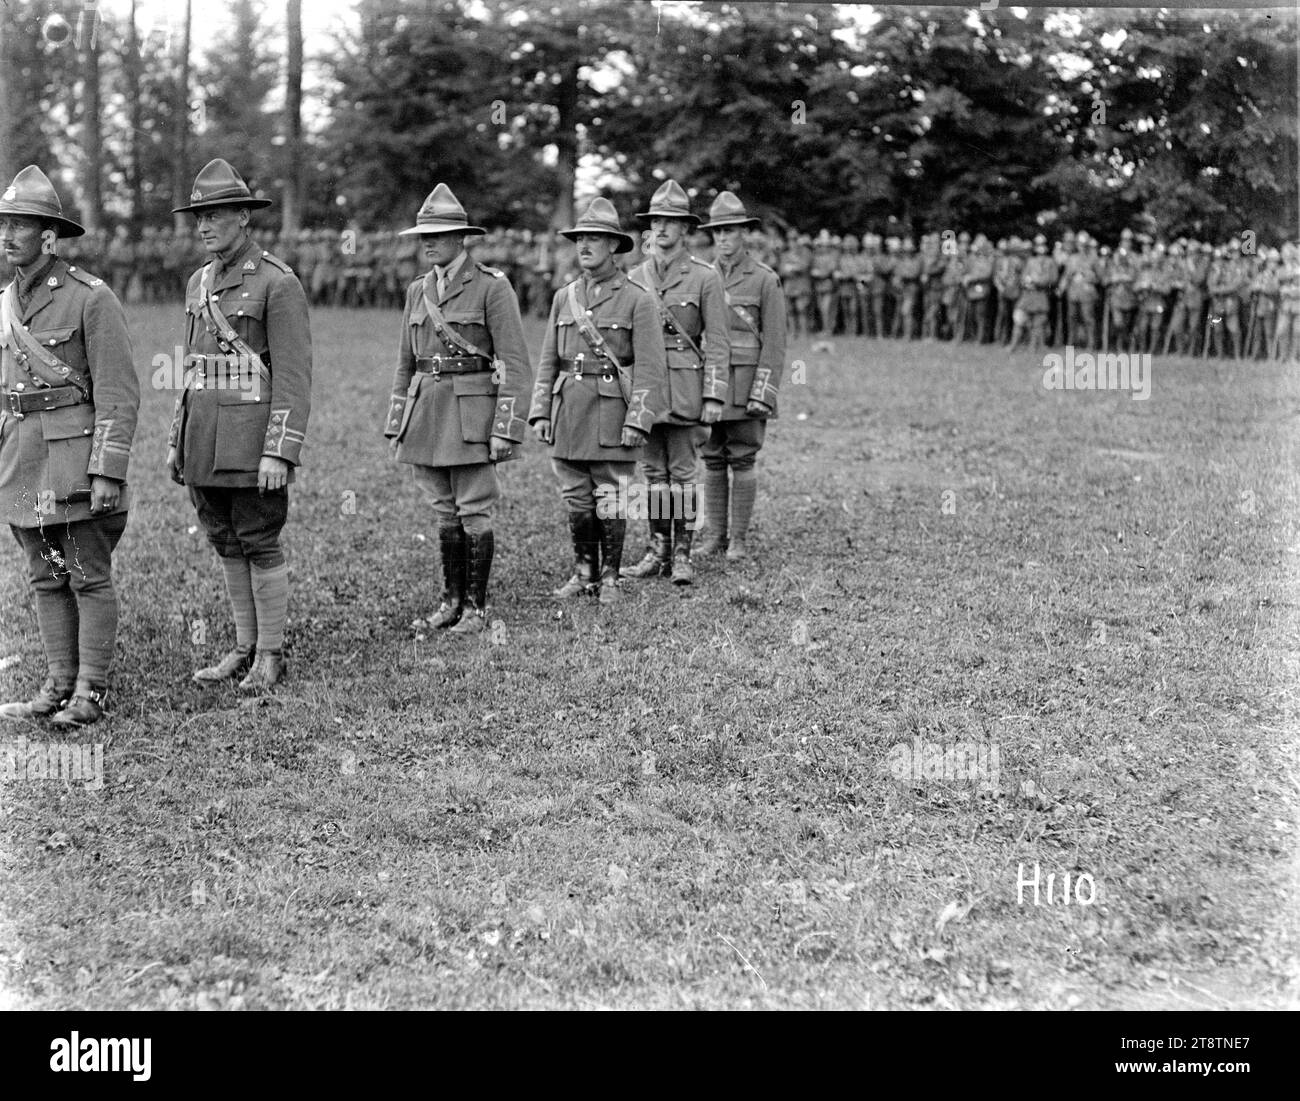 La présentation de médailles aux officiers de la division néo-zélandaise de la première Guerre mondiale montre certains des officiers de la division néo-zélandaise décorés par le général Godley. Photographie prise le 8 juillet 1917 Banque D'Images